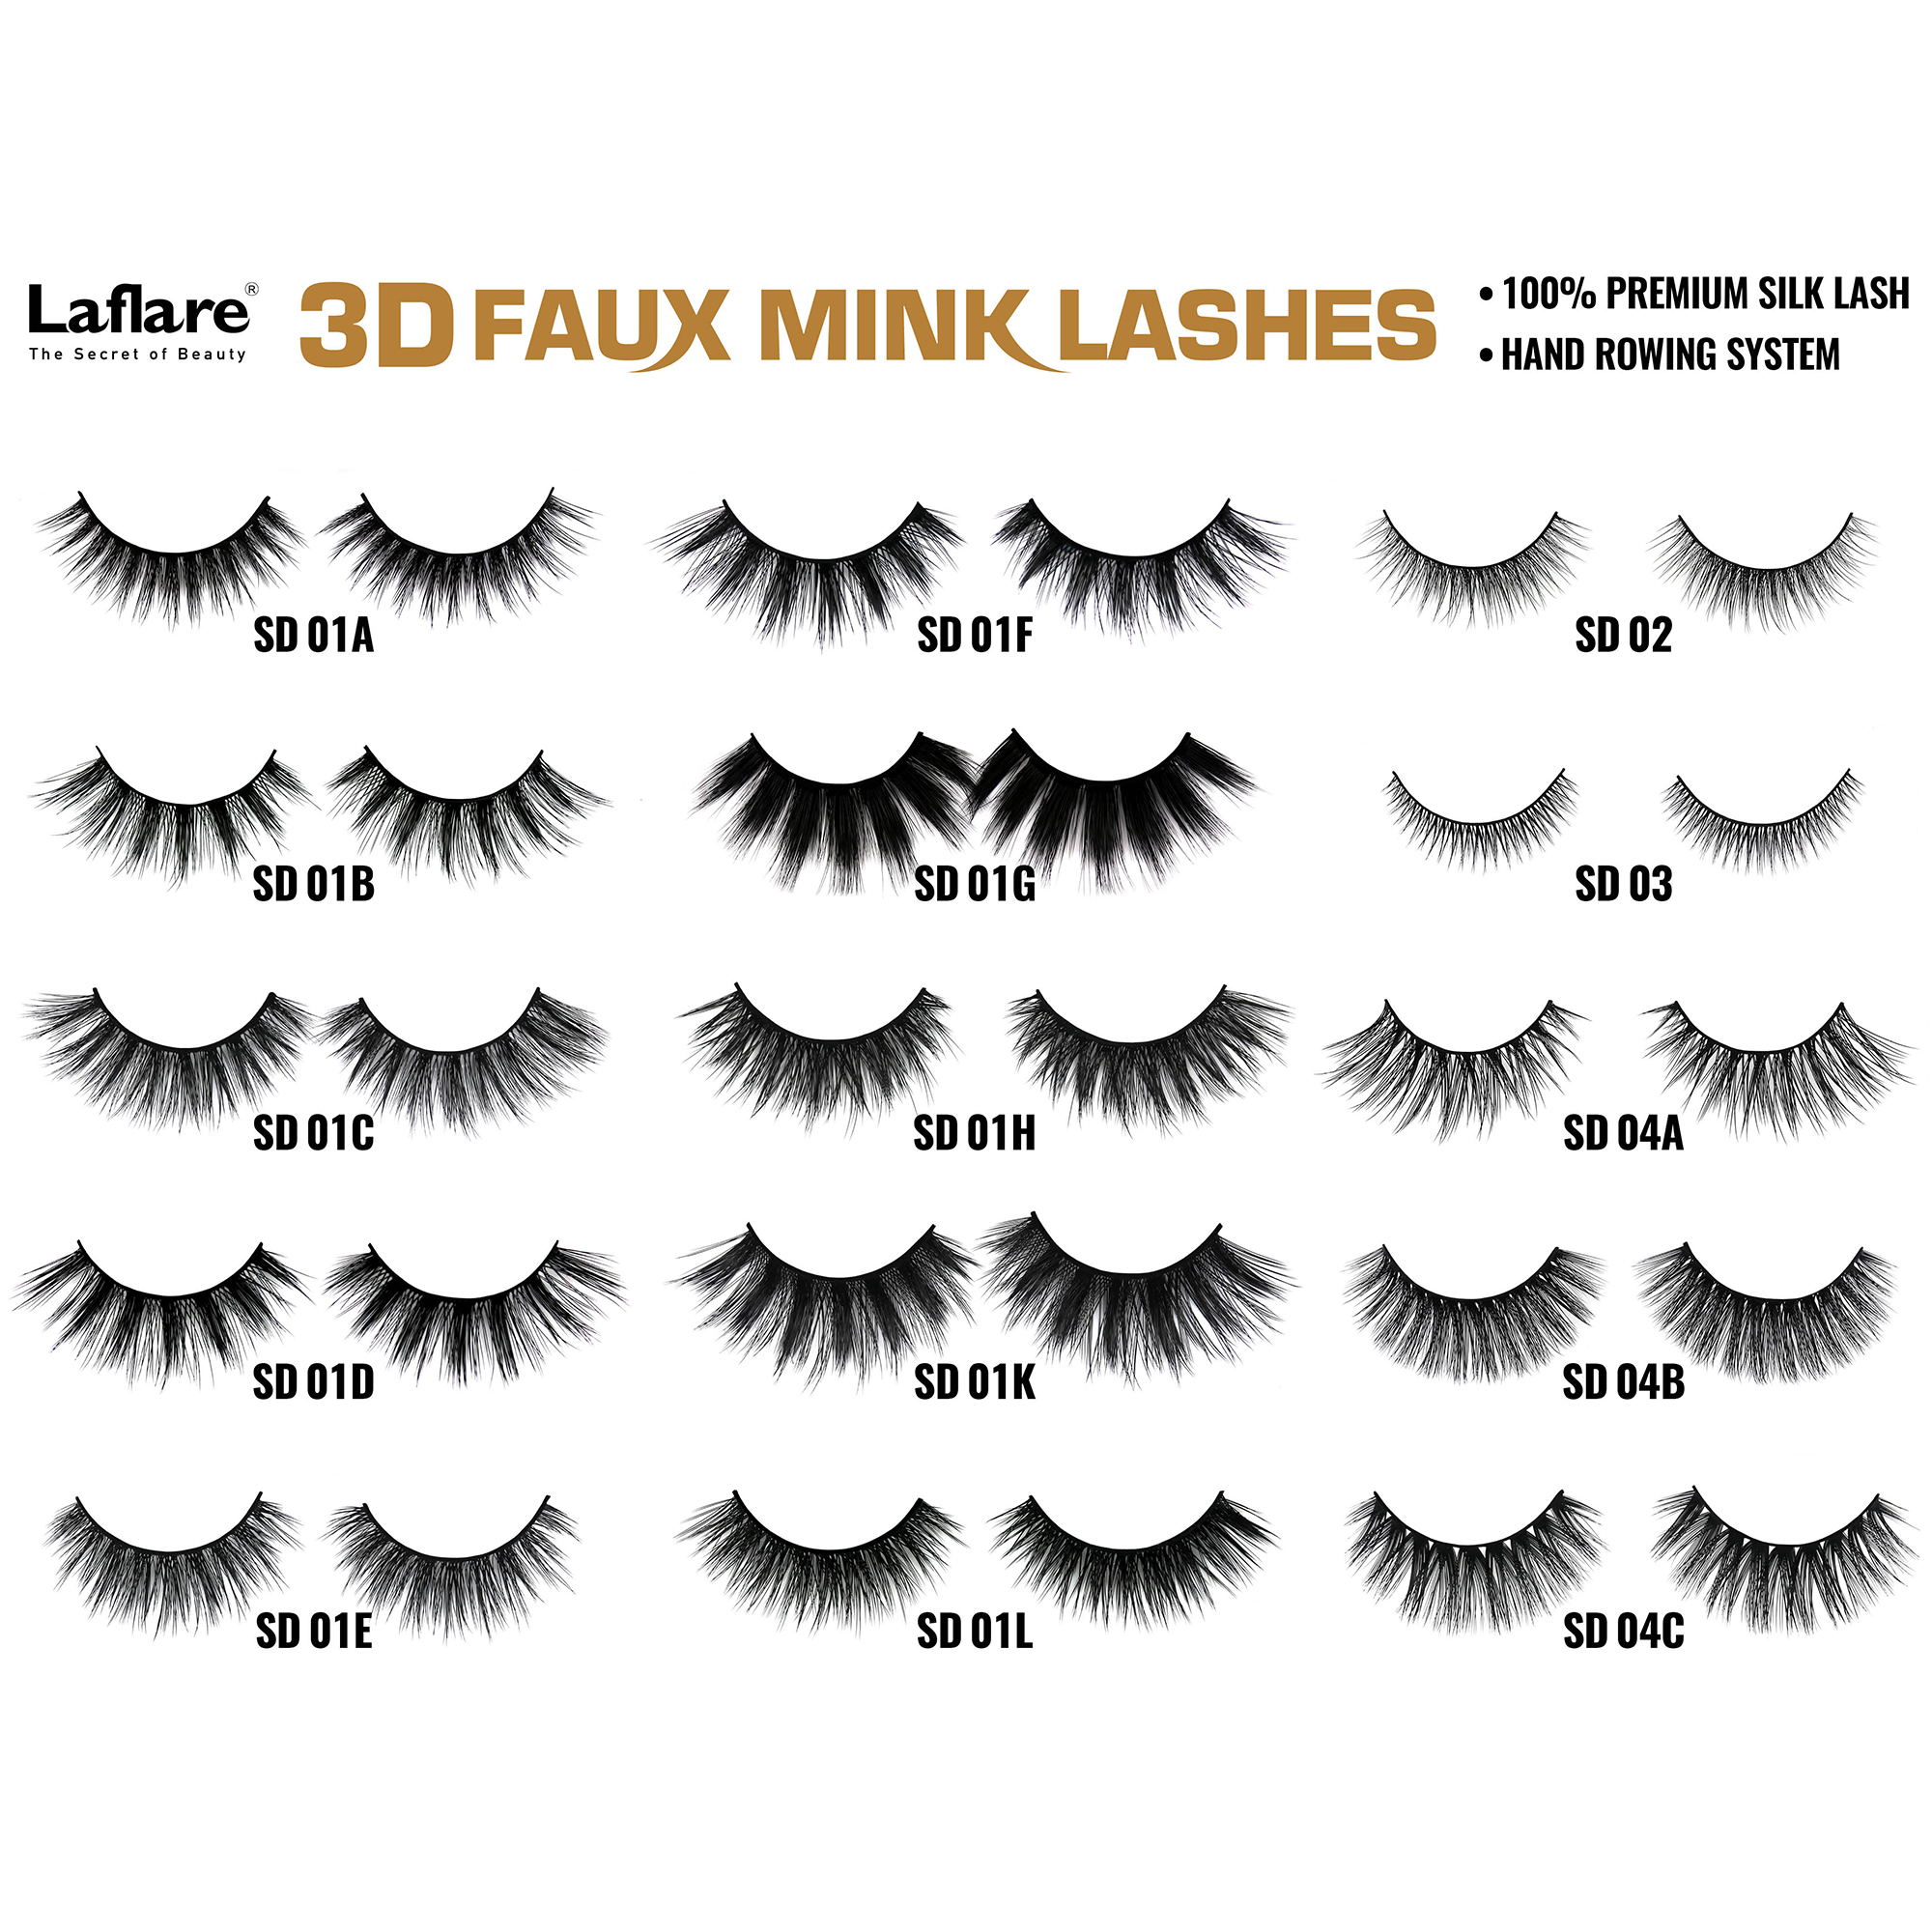 LAFLARE 3d Faux Mink Lashes - SD01C